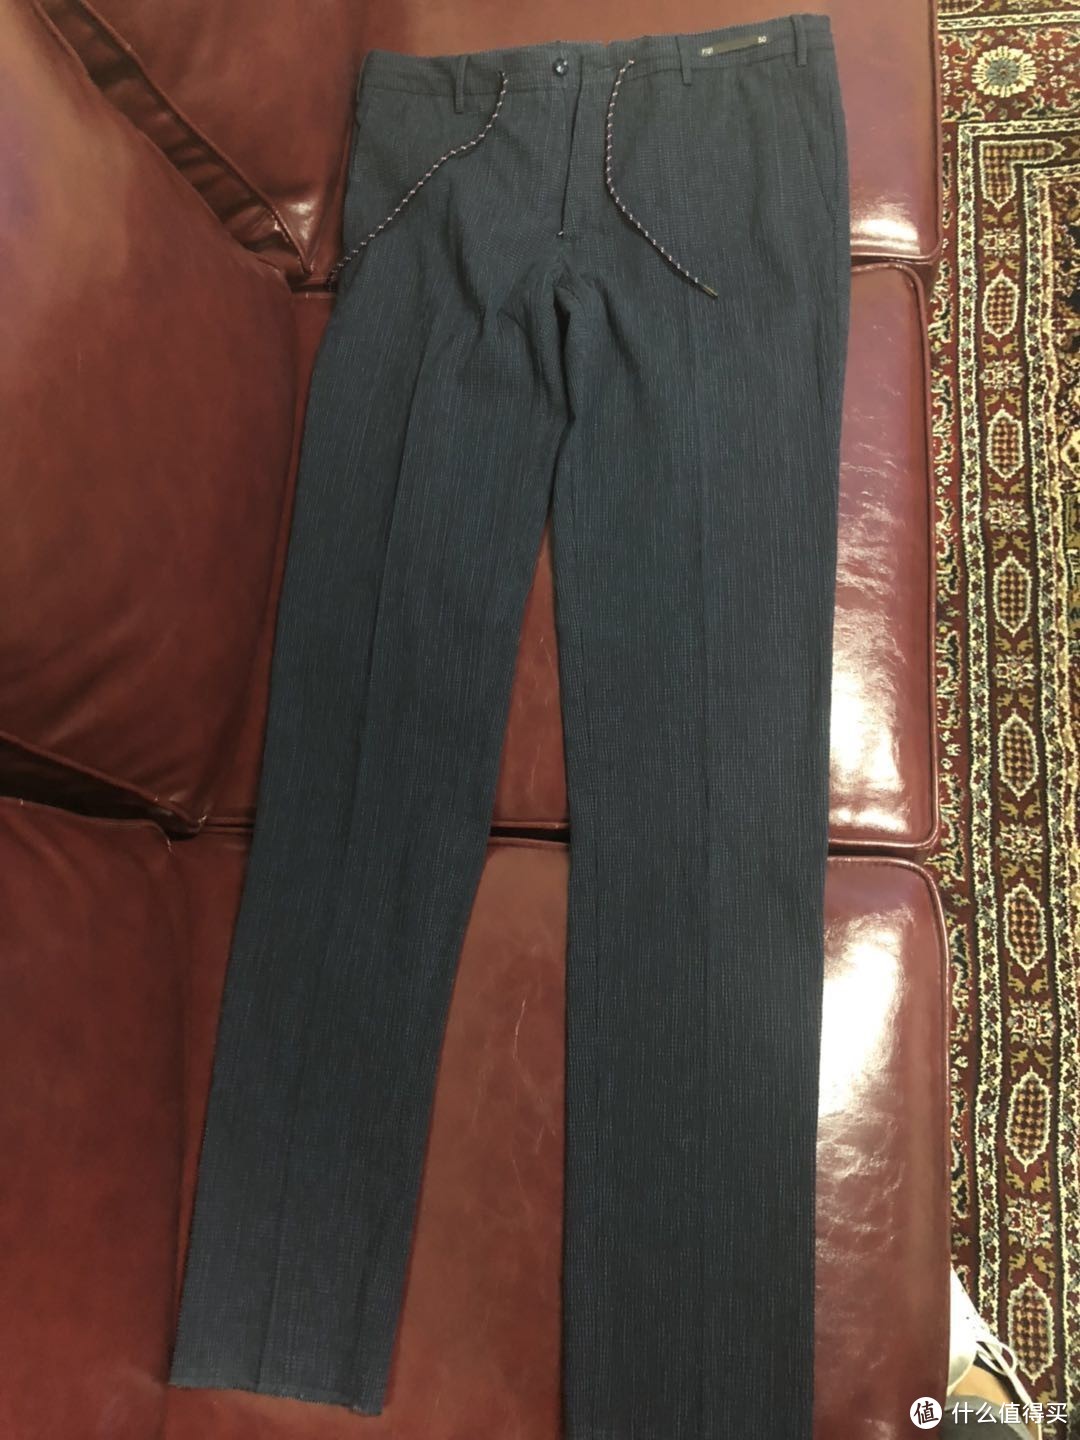 PT01—— 一条纹理很特别的裤子